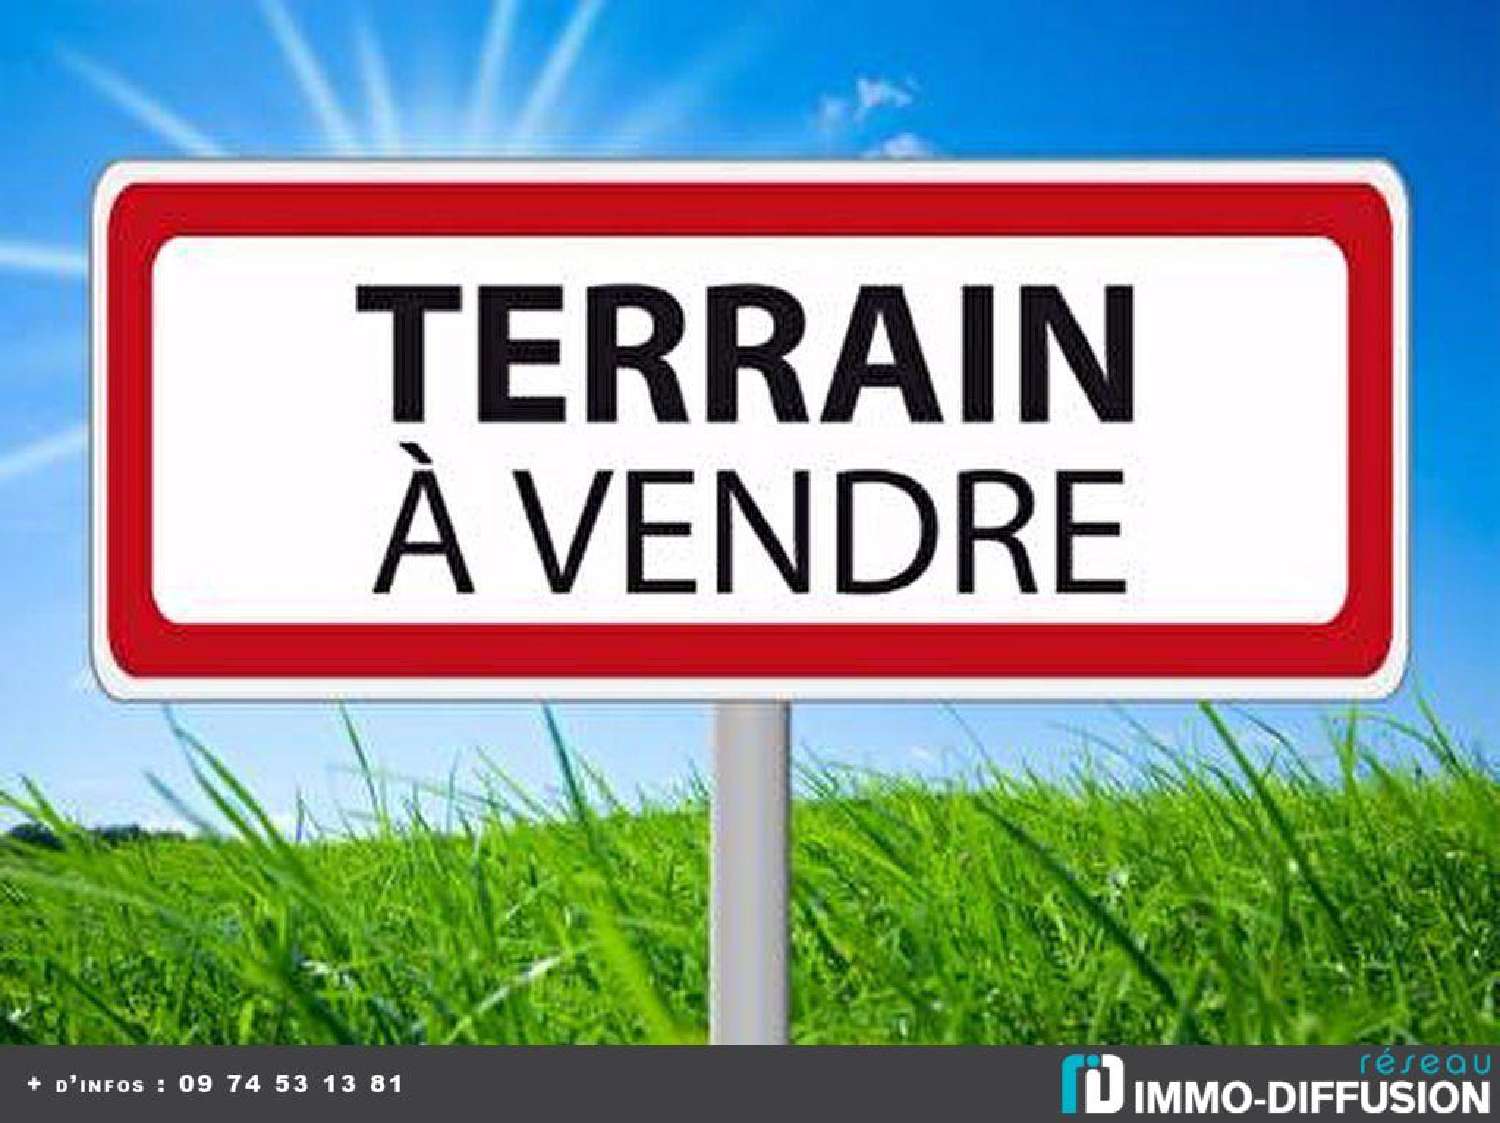  for sale terrain Sainte-Foy Vendée 1